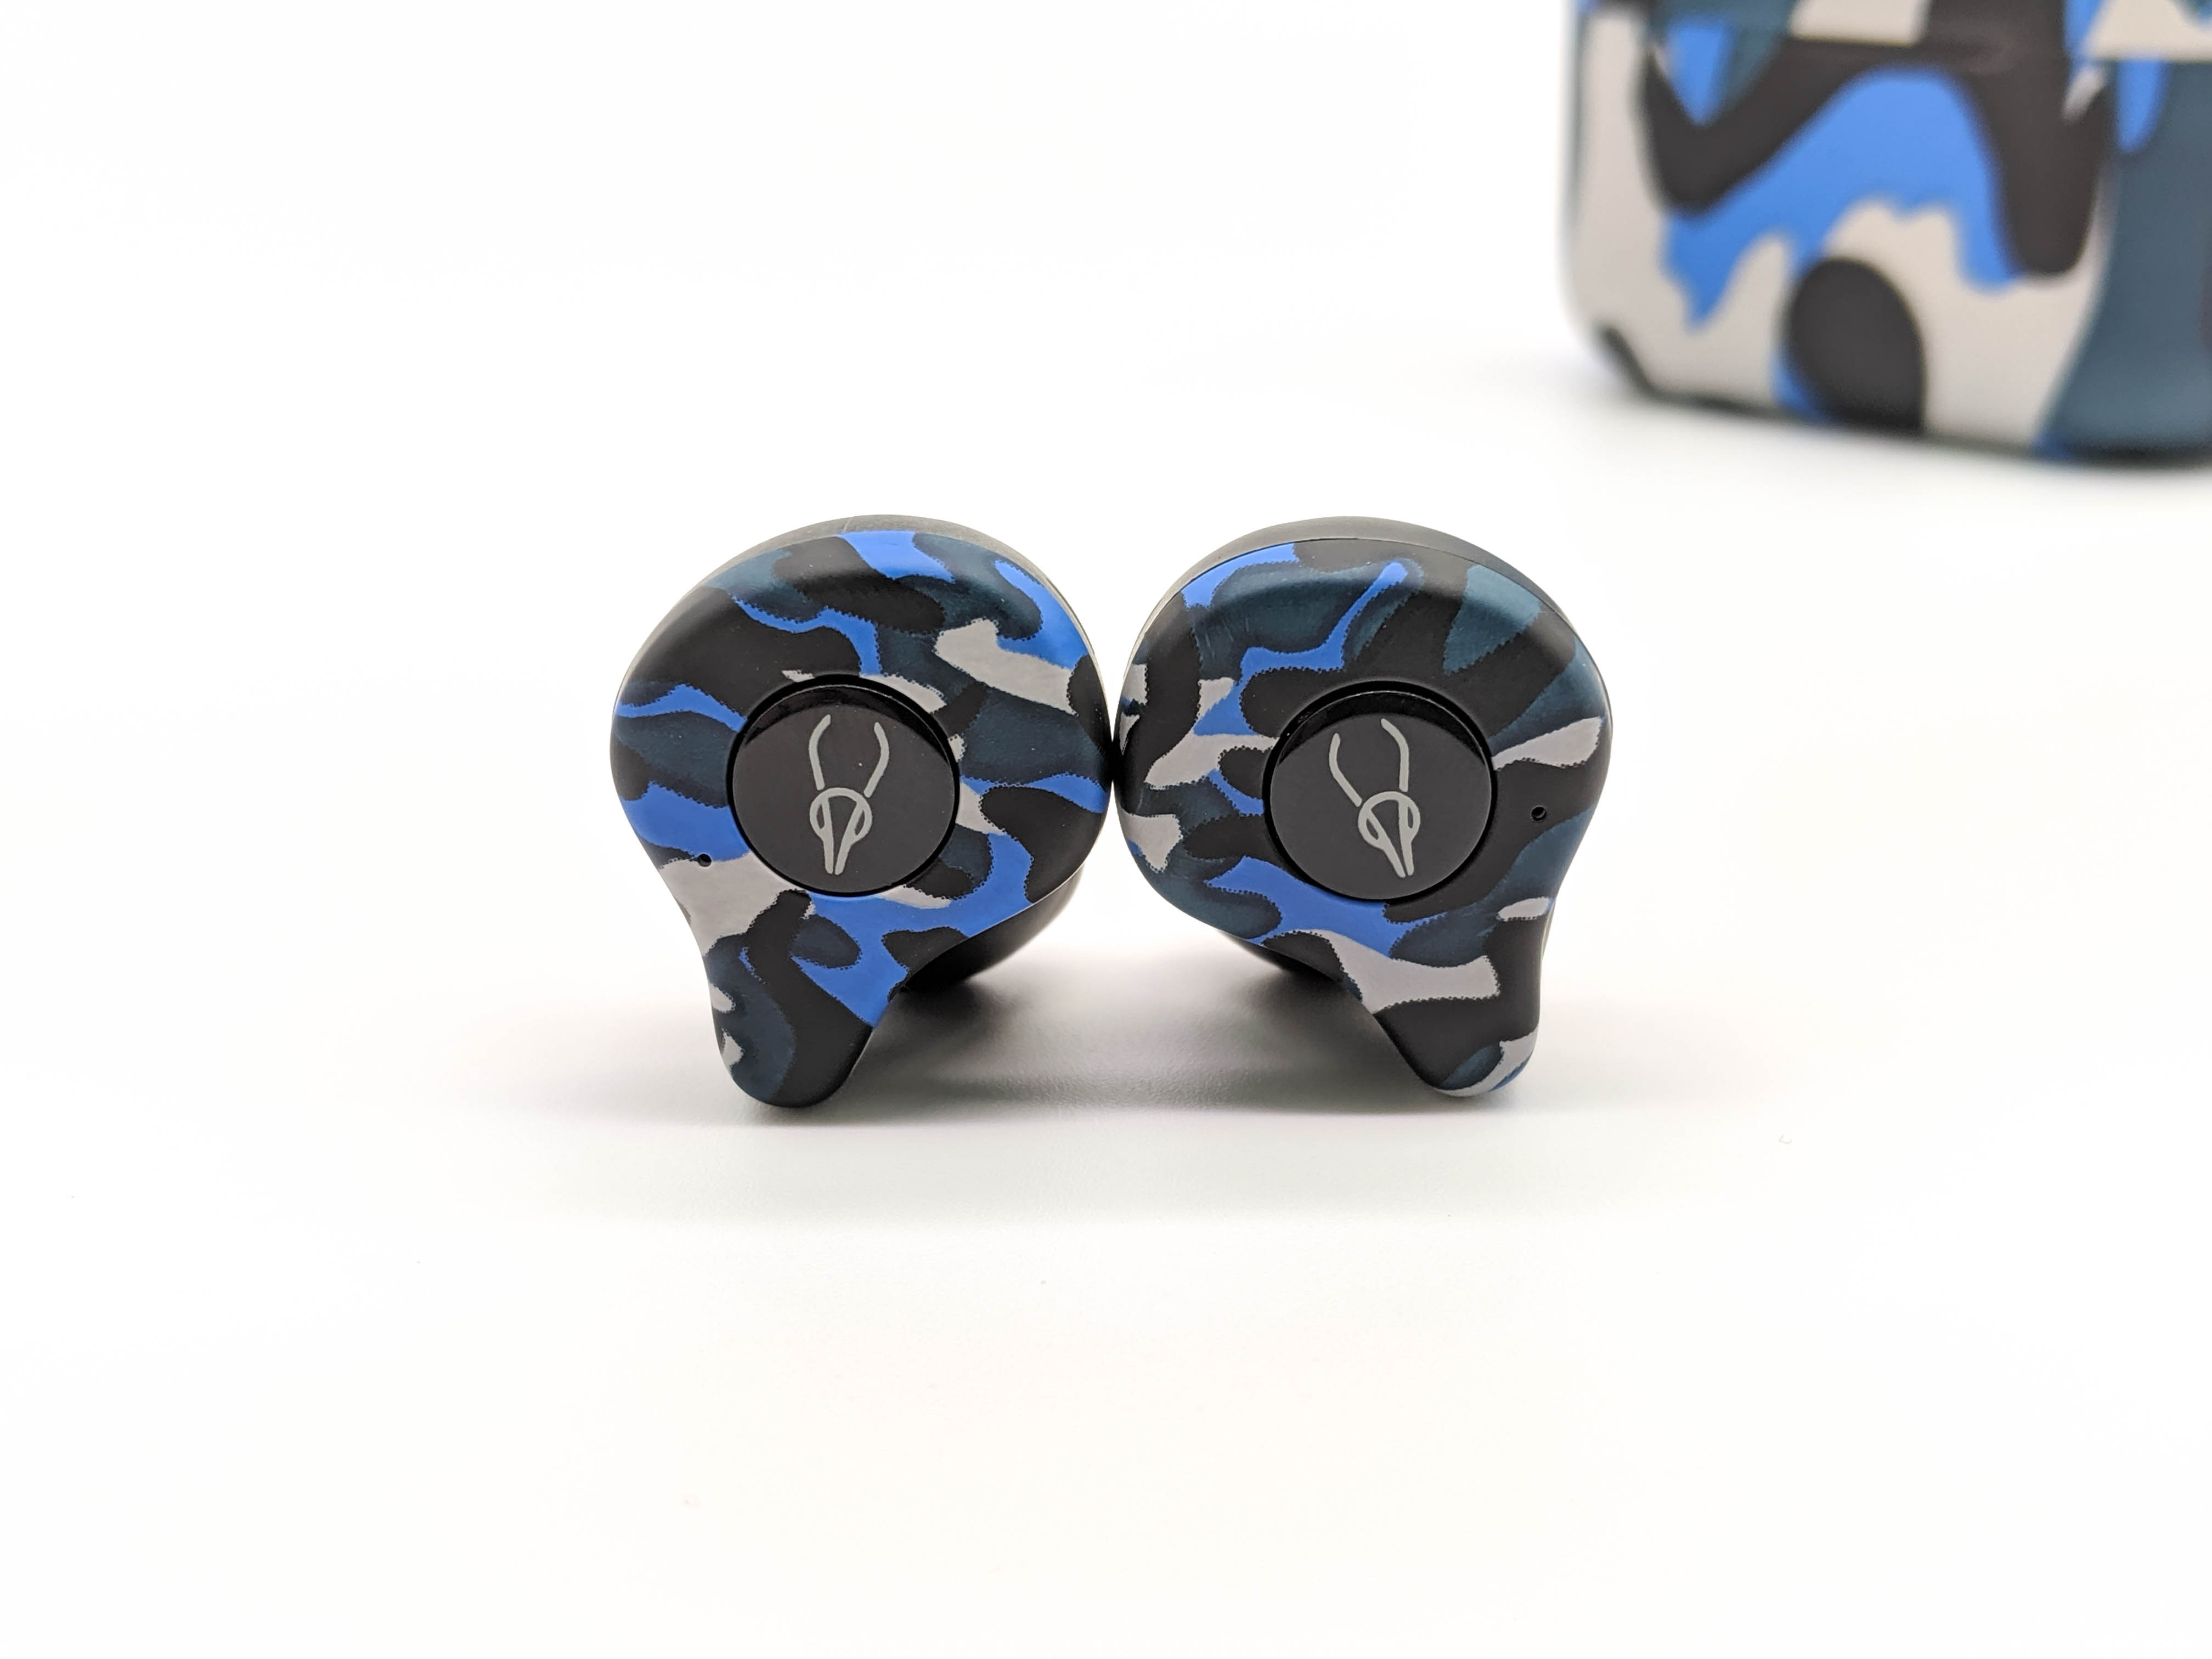 [開箱] 魔宴 Sabbat X12 Pro 真無線藍牙耳機 | 迷彩新色襲來！